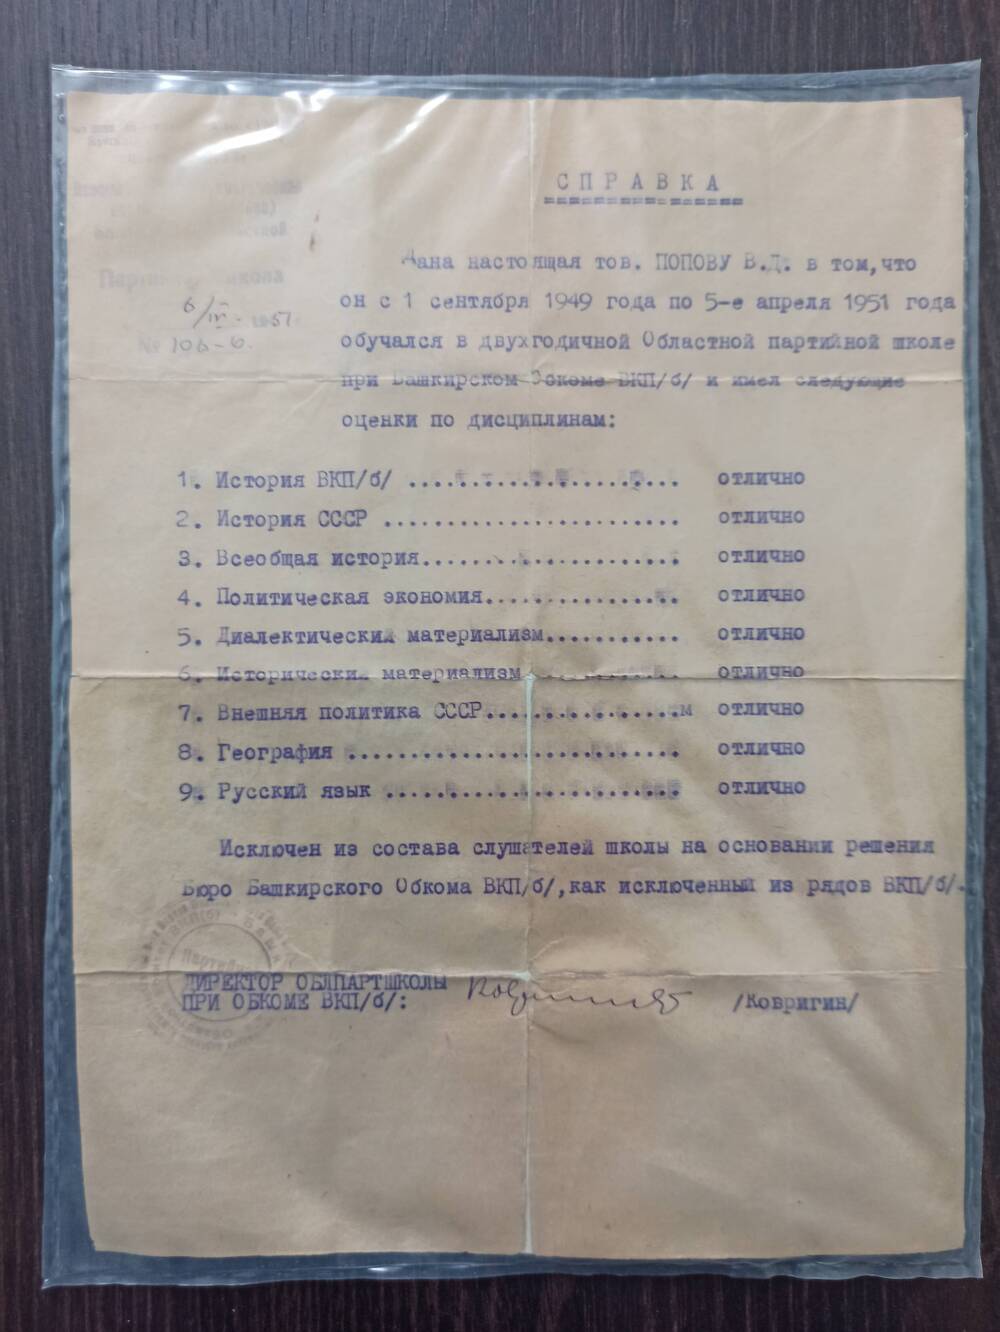 Документ. Справка дана Попову В.Д. в том, что он с 1.09.1949г. по 5.04.1951г. обучался в партшколе. 6.04.1951г.